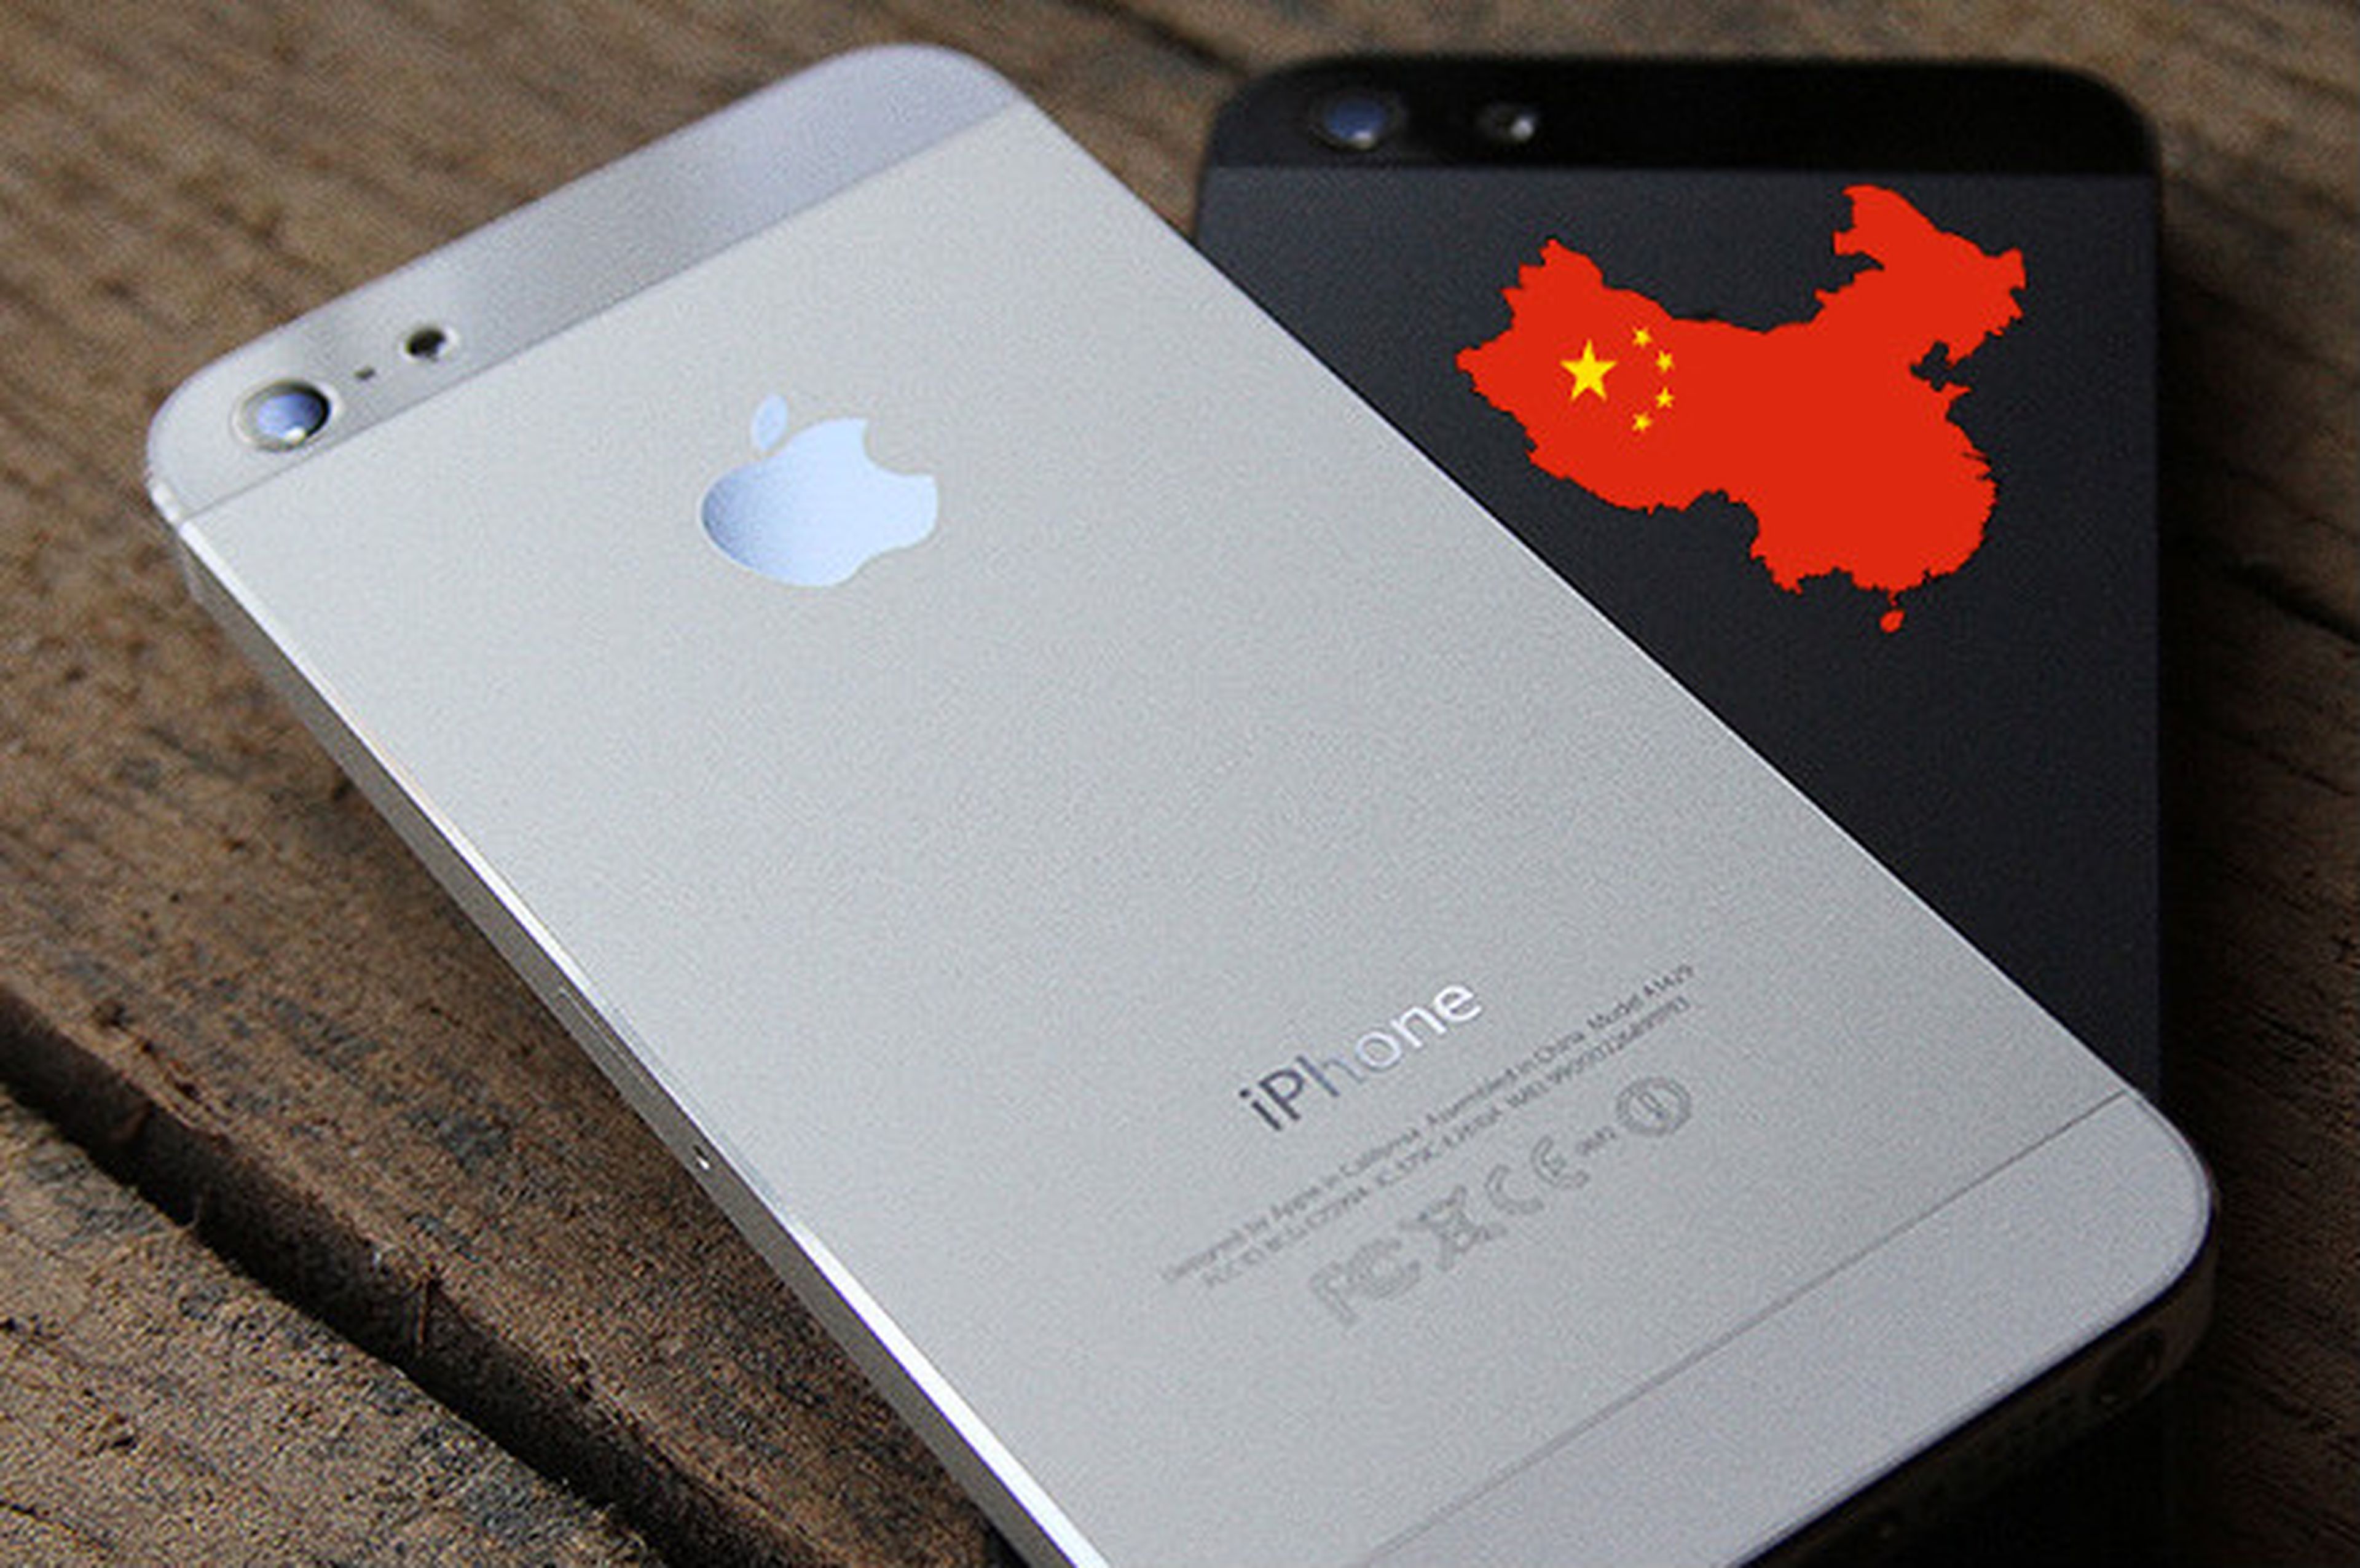 Apple ofrecerá el iPhone 5C para el operador China Mobile | Computer Hoy